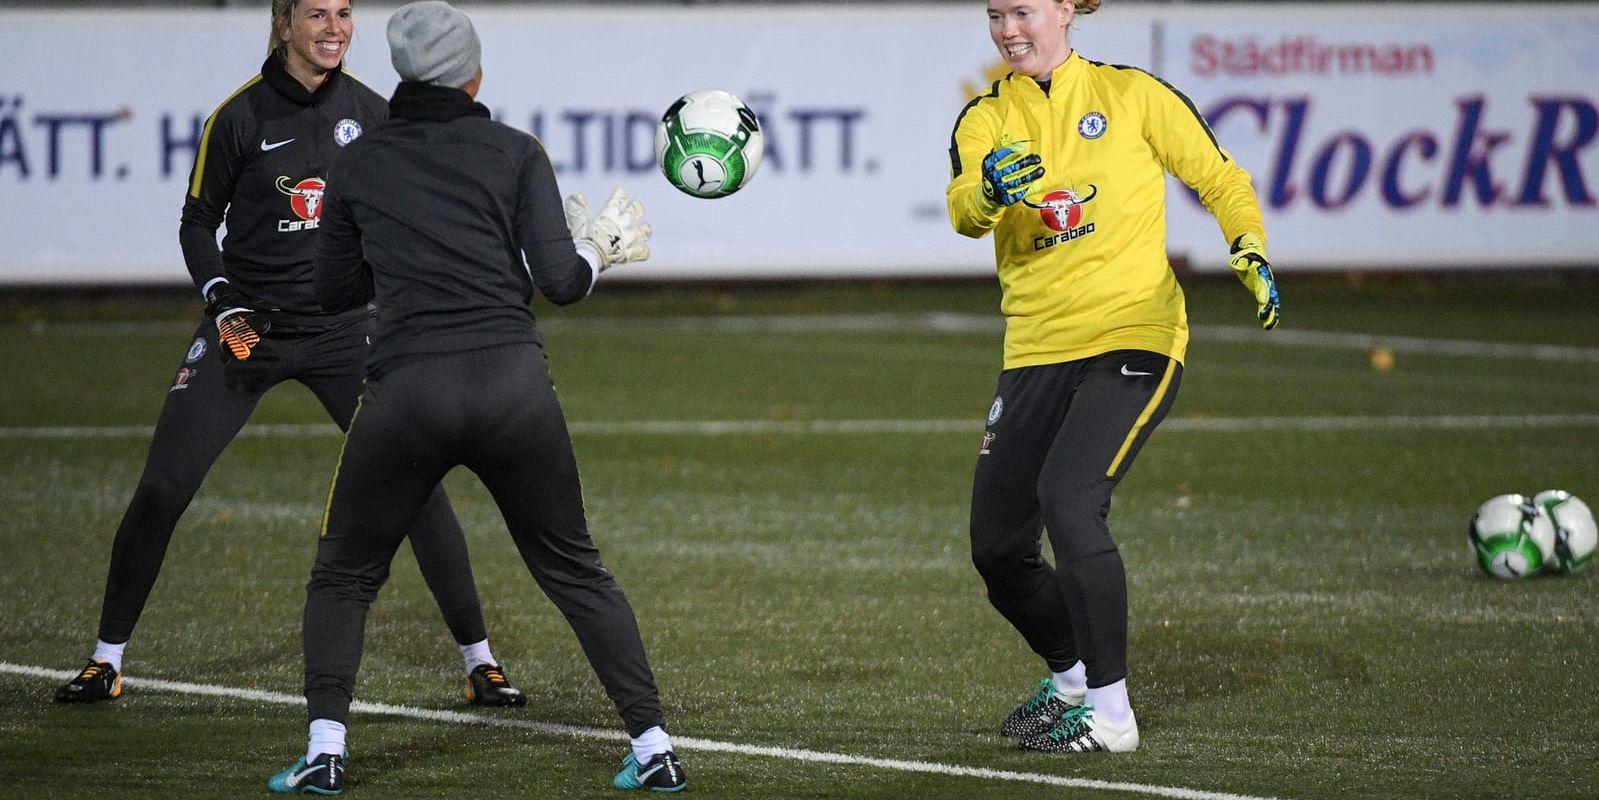 Landslagsmålvakten Hedvig Lindahl, Chelsea, värmer upp på Malmö IP. Londonklubben har med sig en 3–0-seger inför returen mot Rosengård i Champions League-fotbollens åttondelsfinal.